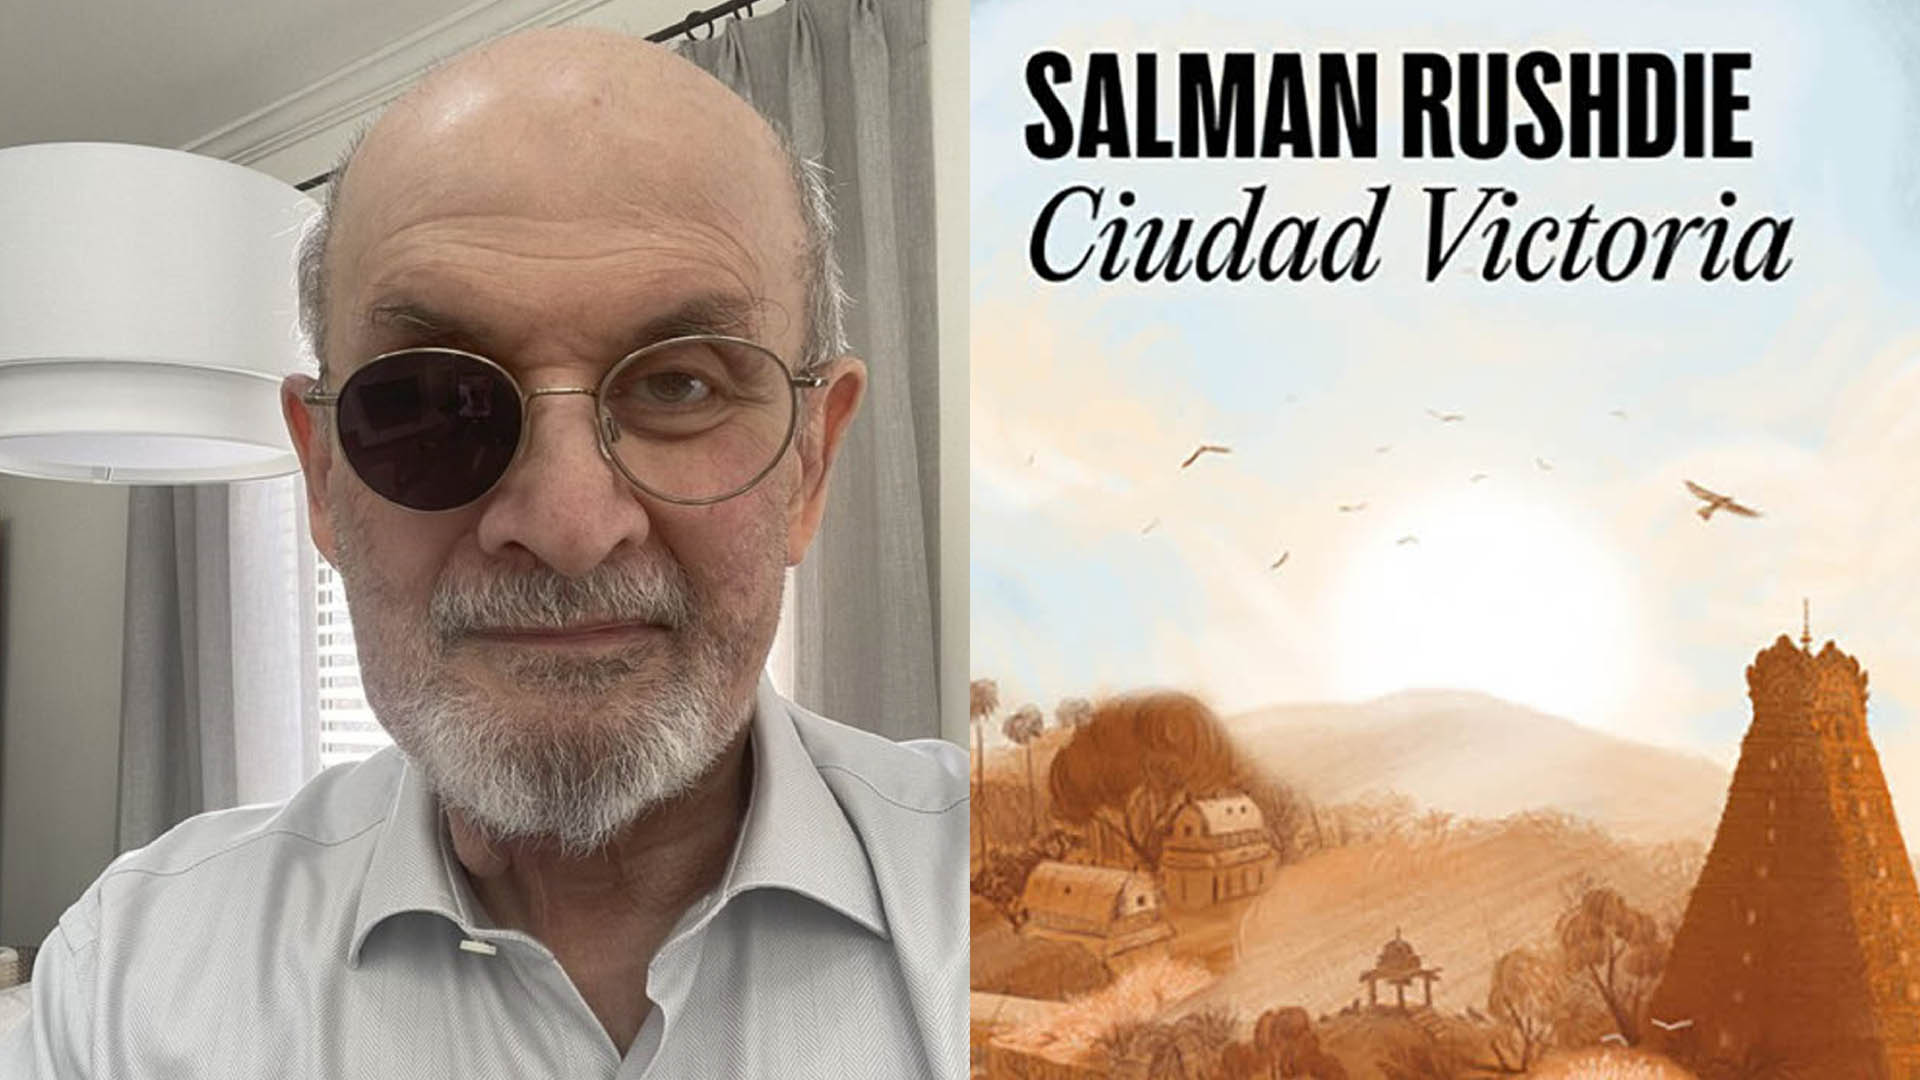 En su primera novela tras ser apuñalado, Salman Rushdie habla de su vida... quizás sin querer